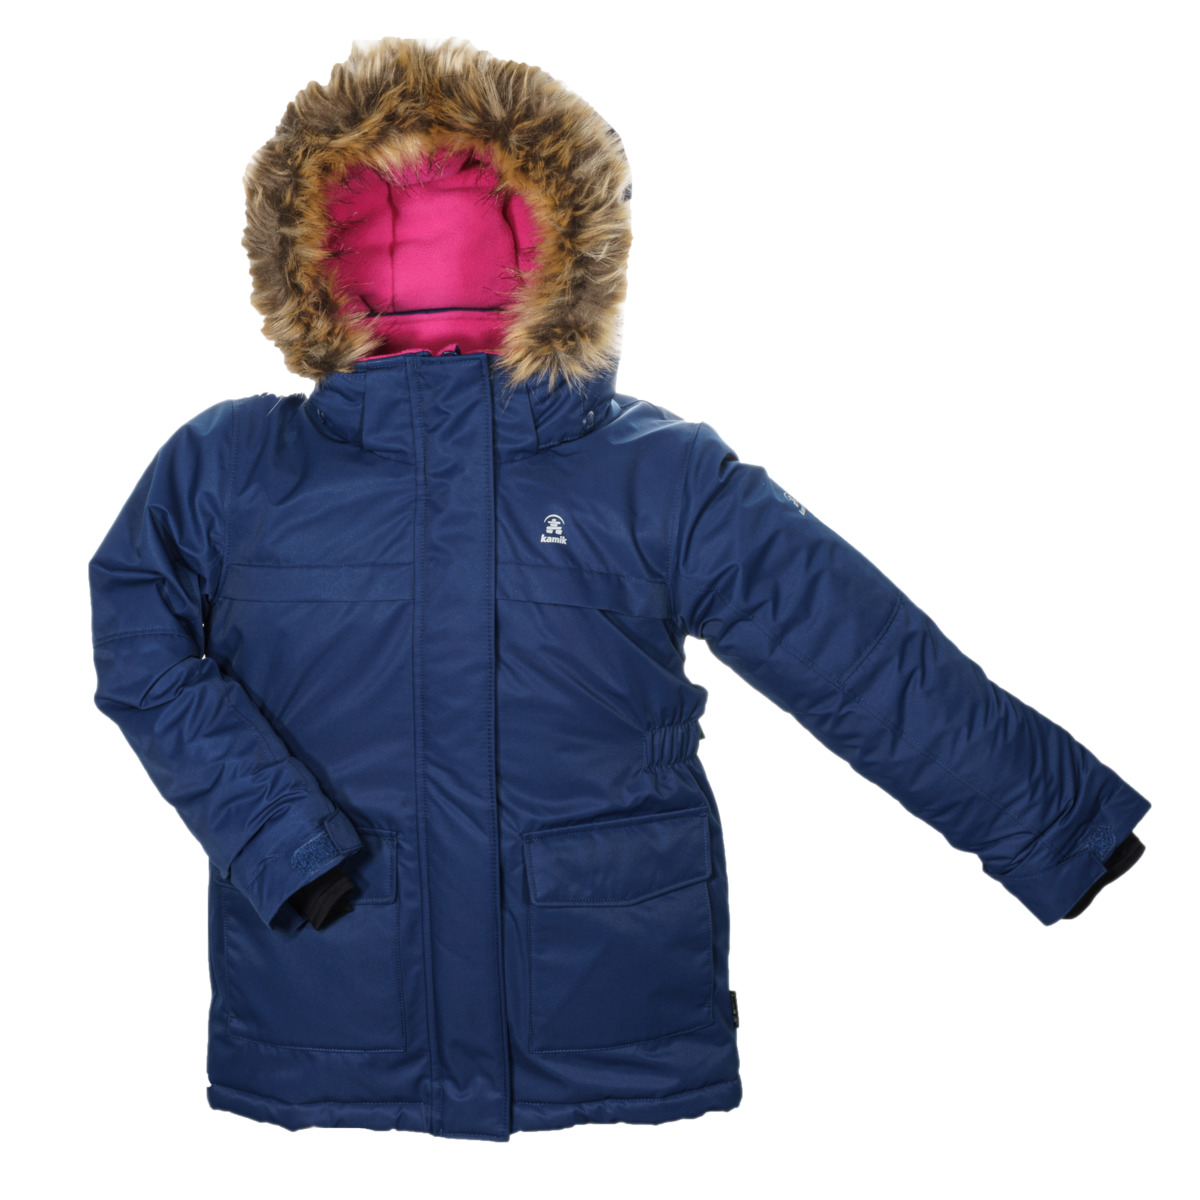 Jacken für Kinder günstig online - bei kaufen TAURO